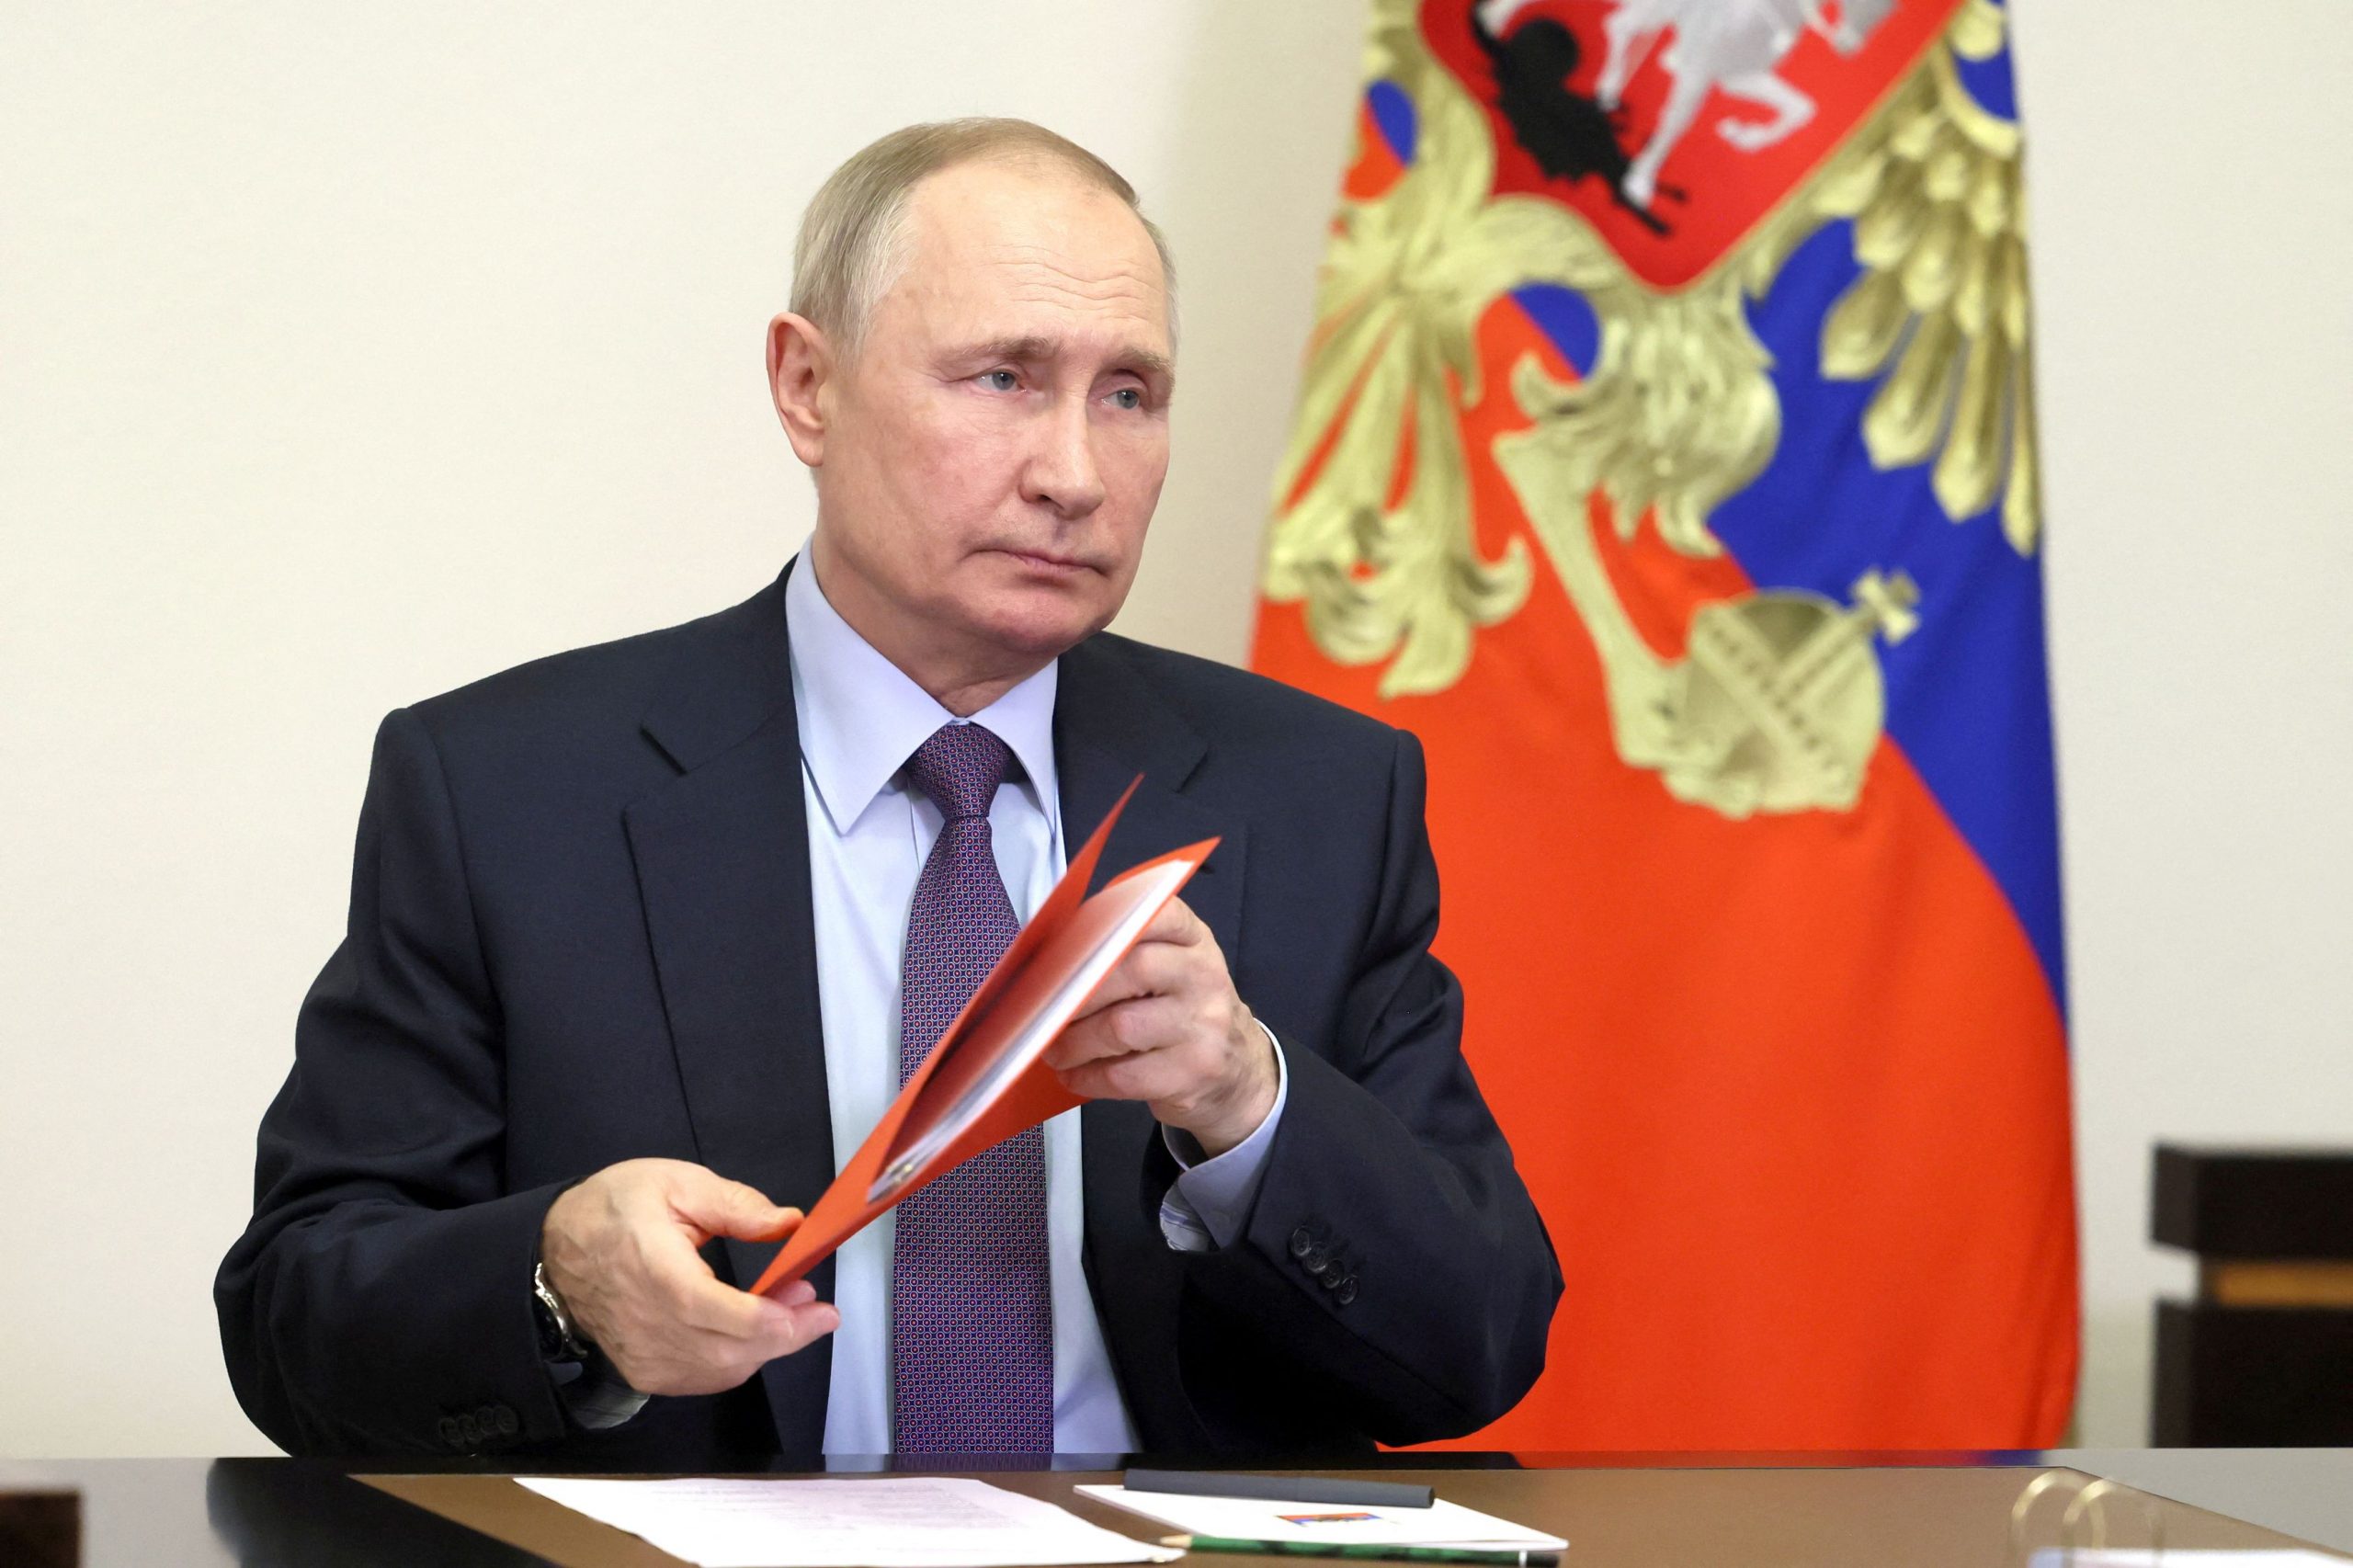 Κρεμλίνο: «Θετικός ο Β.Πούτιν στο ενδεχόμενο επικοινωνίας με τον Ο.Σολτς»